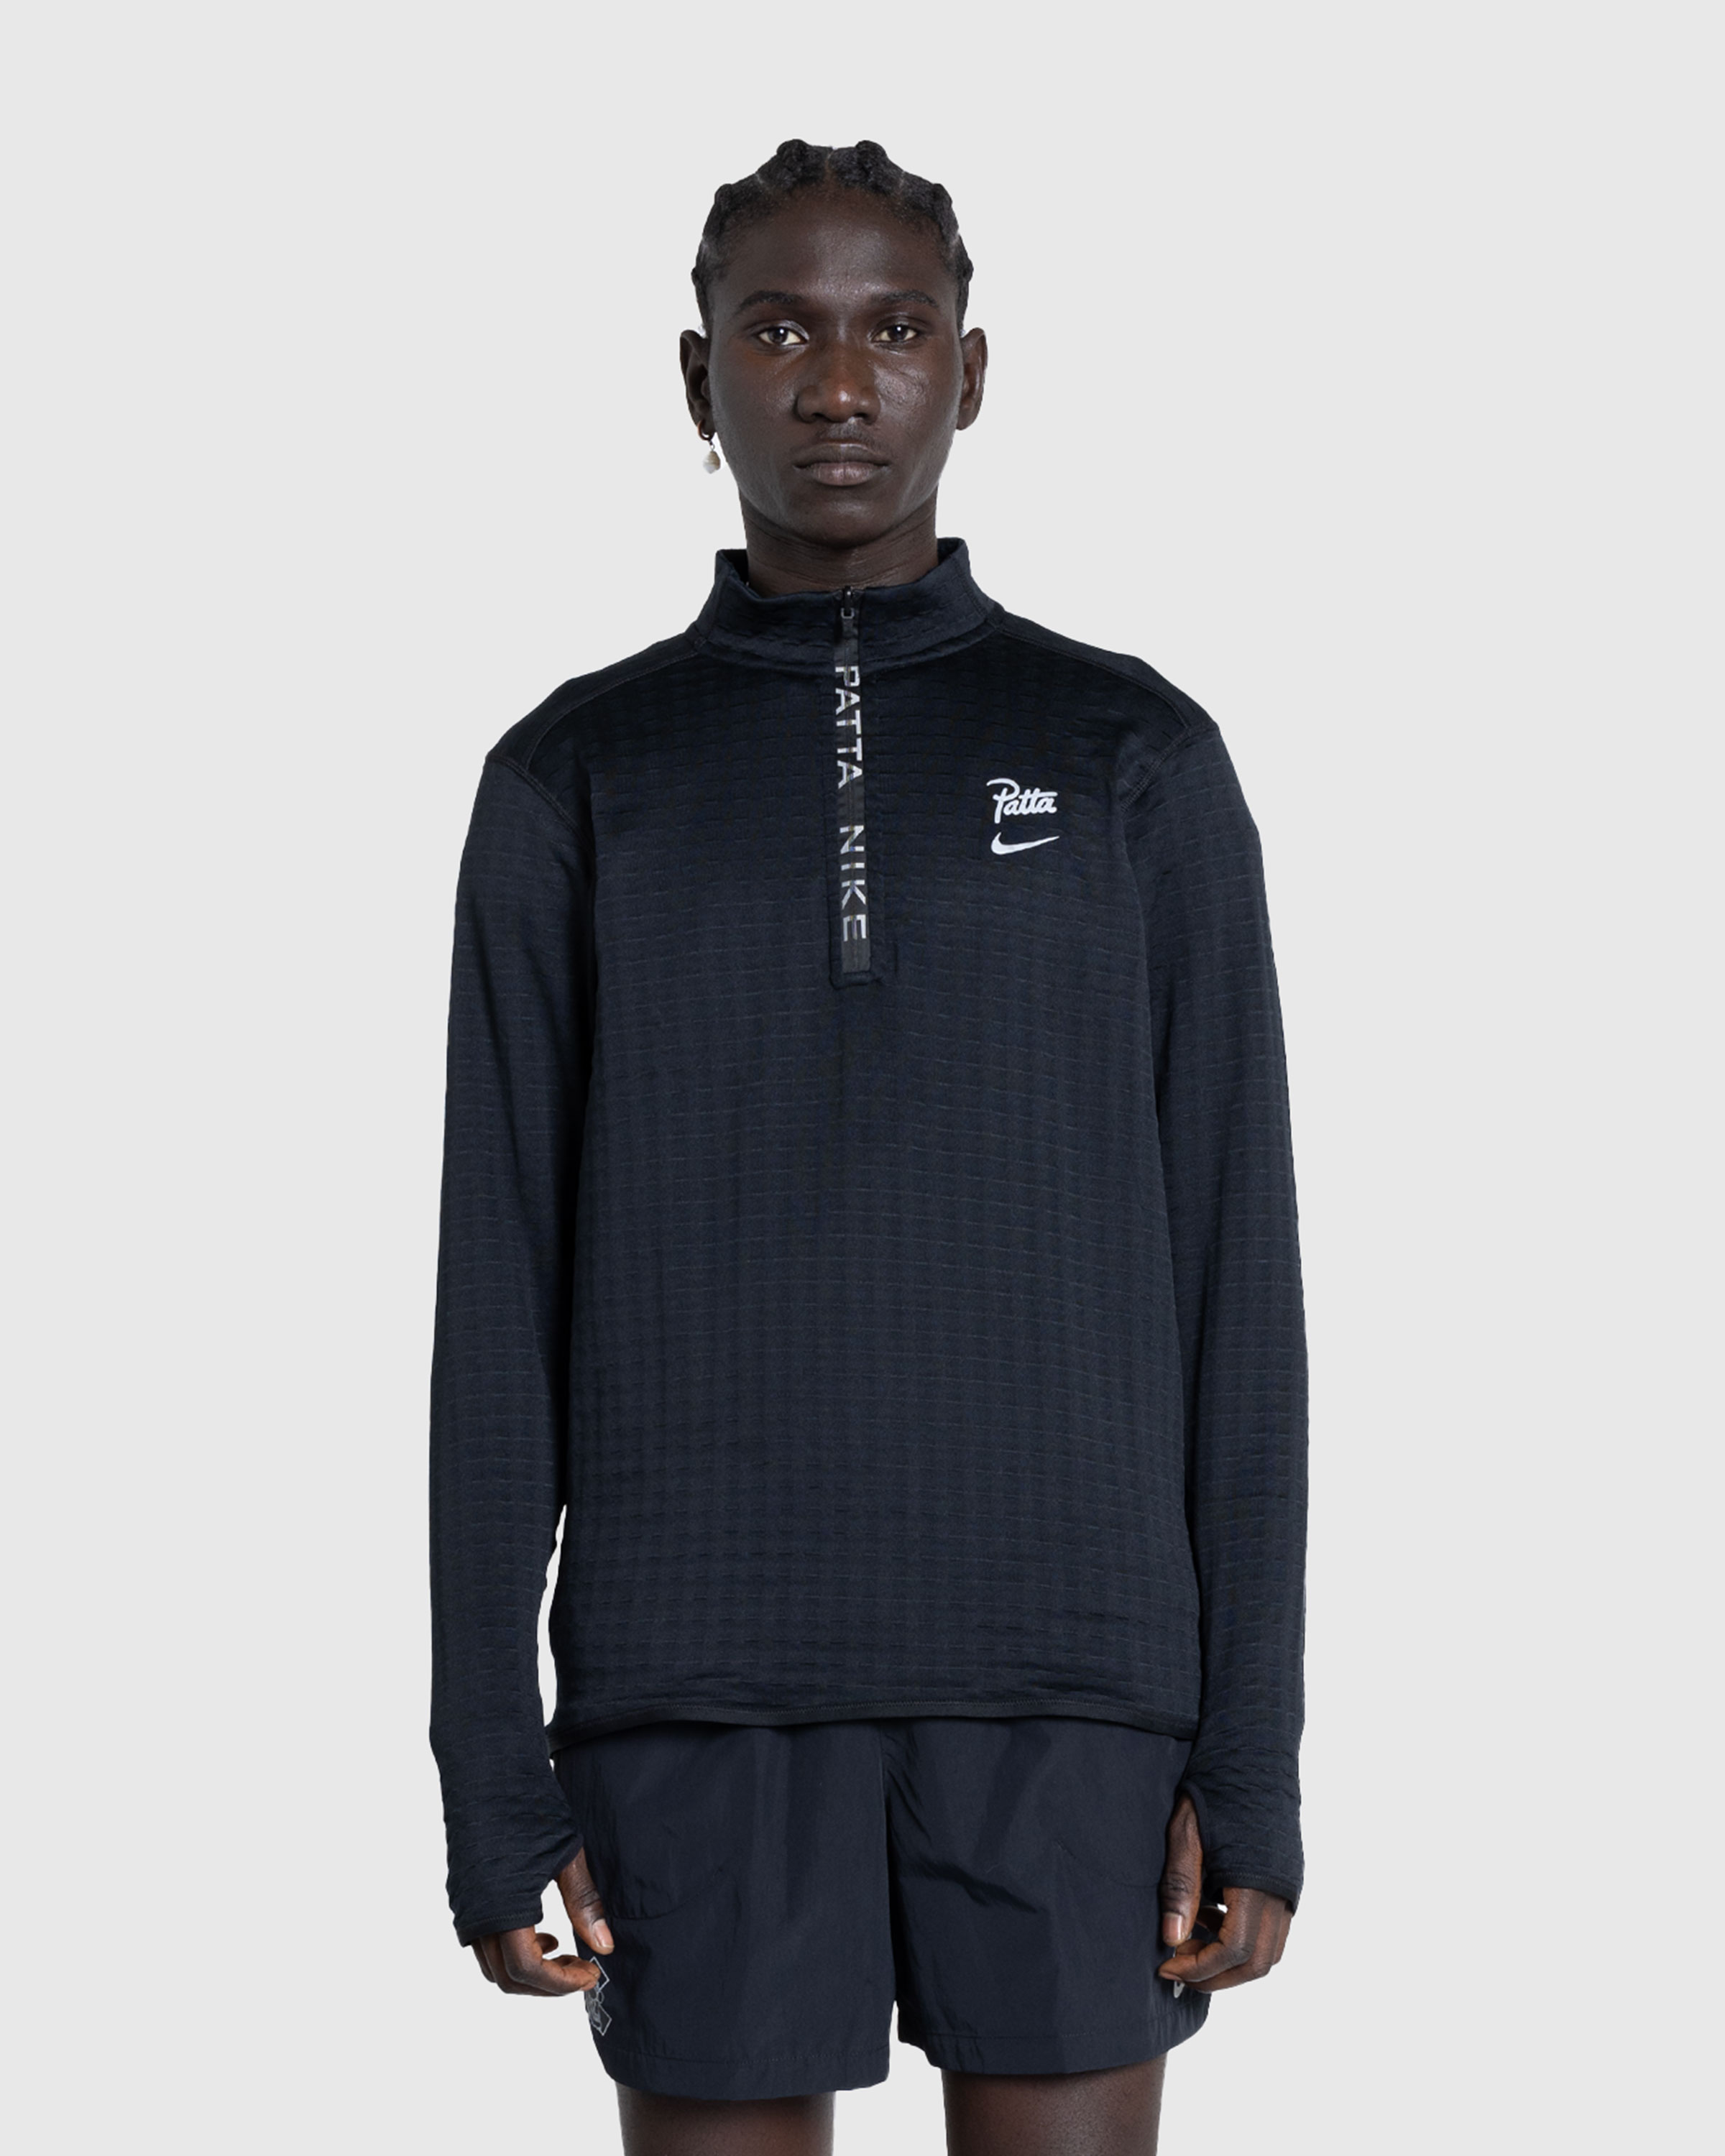 Nike x Patta – Half-Zip Long-Sleeve Top Black - Zip-Ups - Black - Image 2